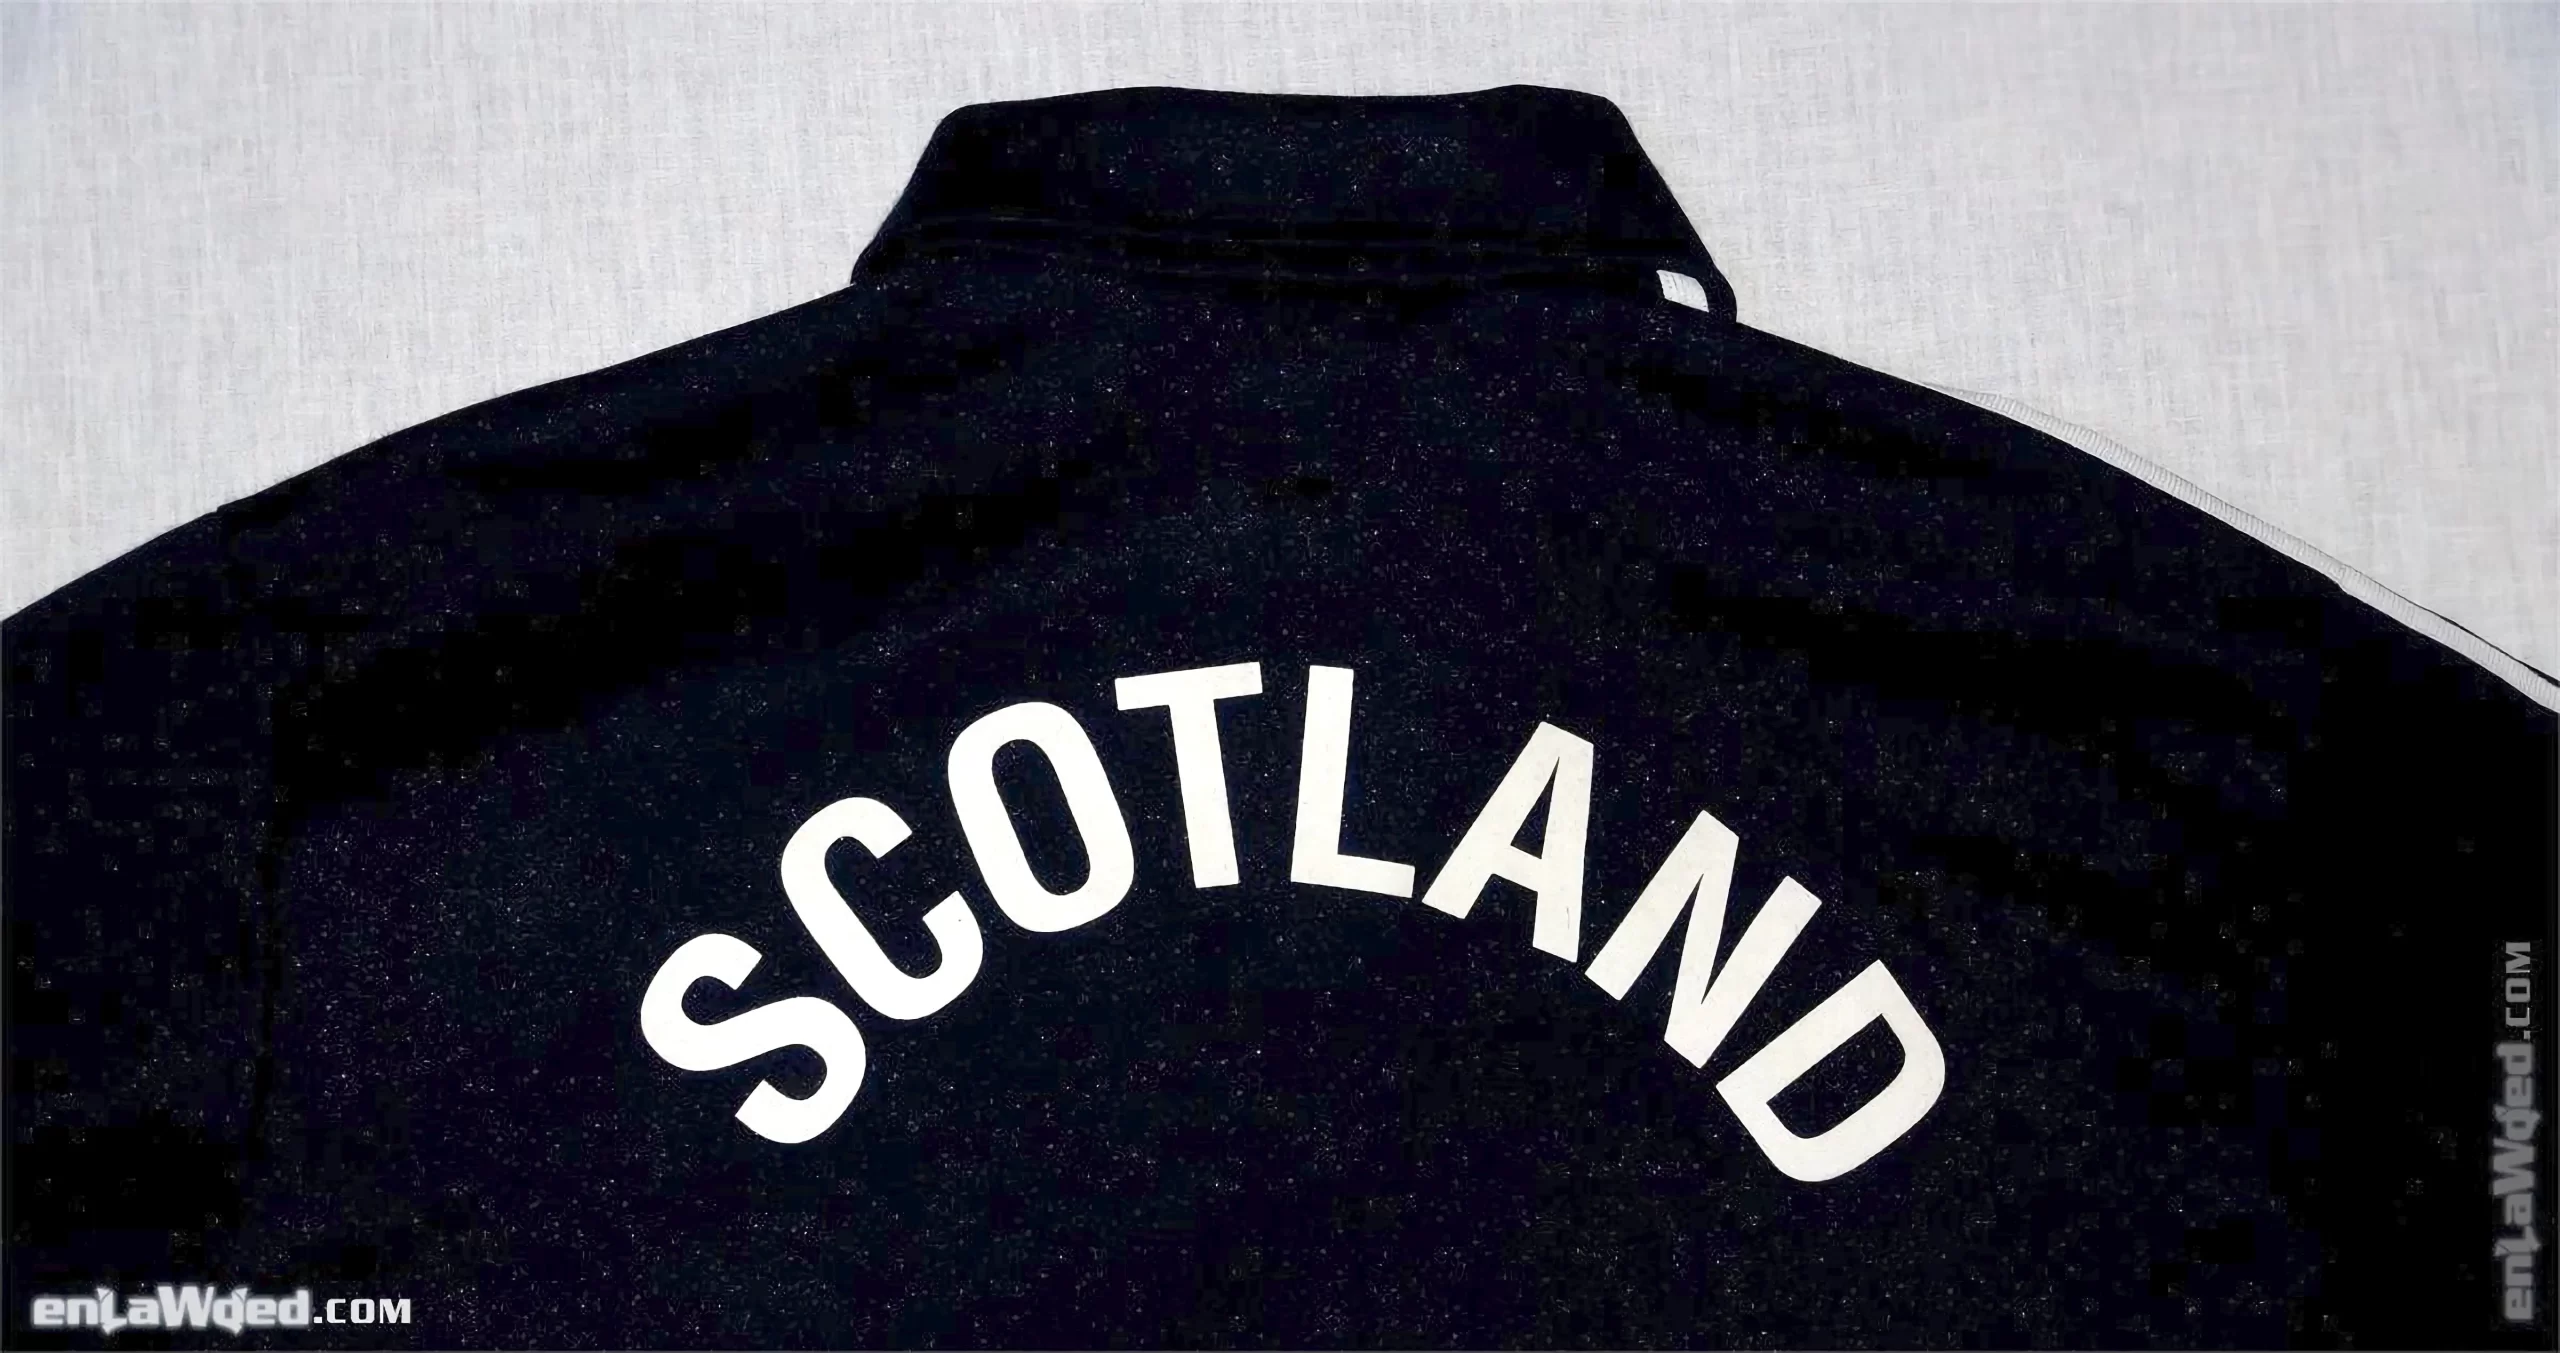 Men’s 2004 Scotland Track Top by Adidas Originals: Quiet (EnLawded.com file #lmcghuzsph5i17gqbx)